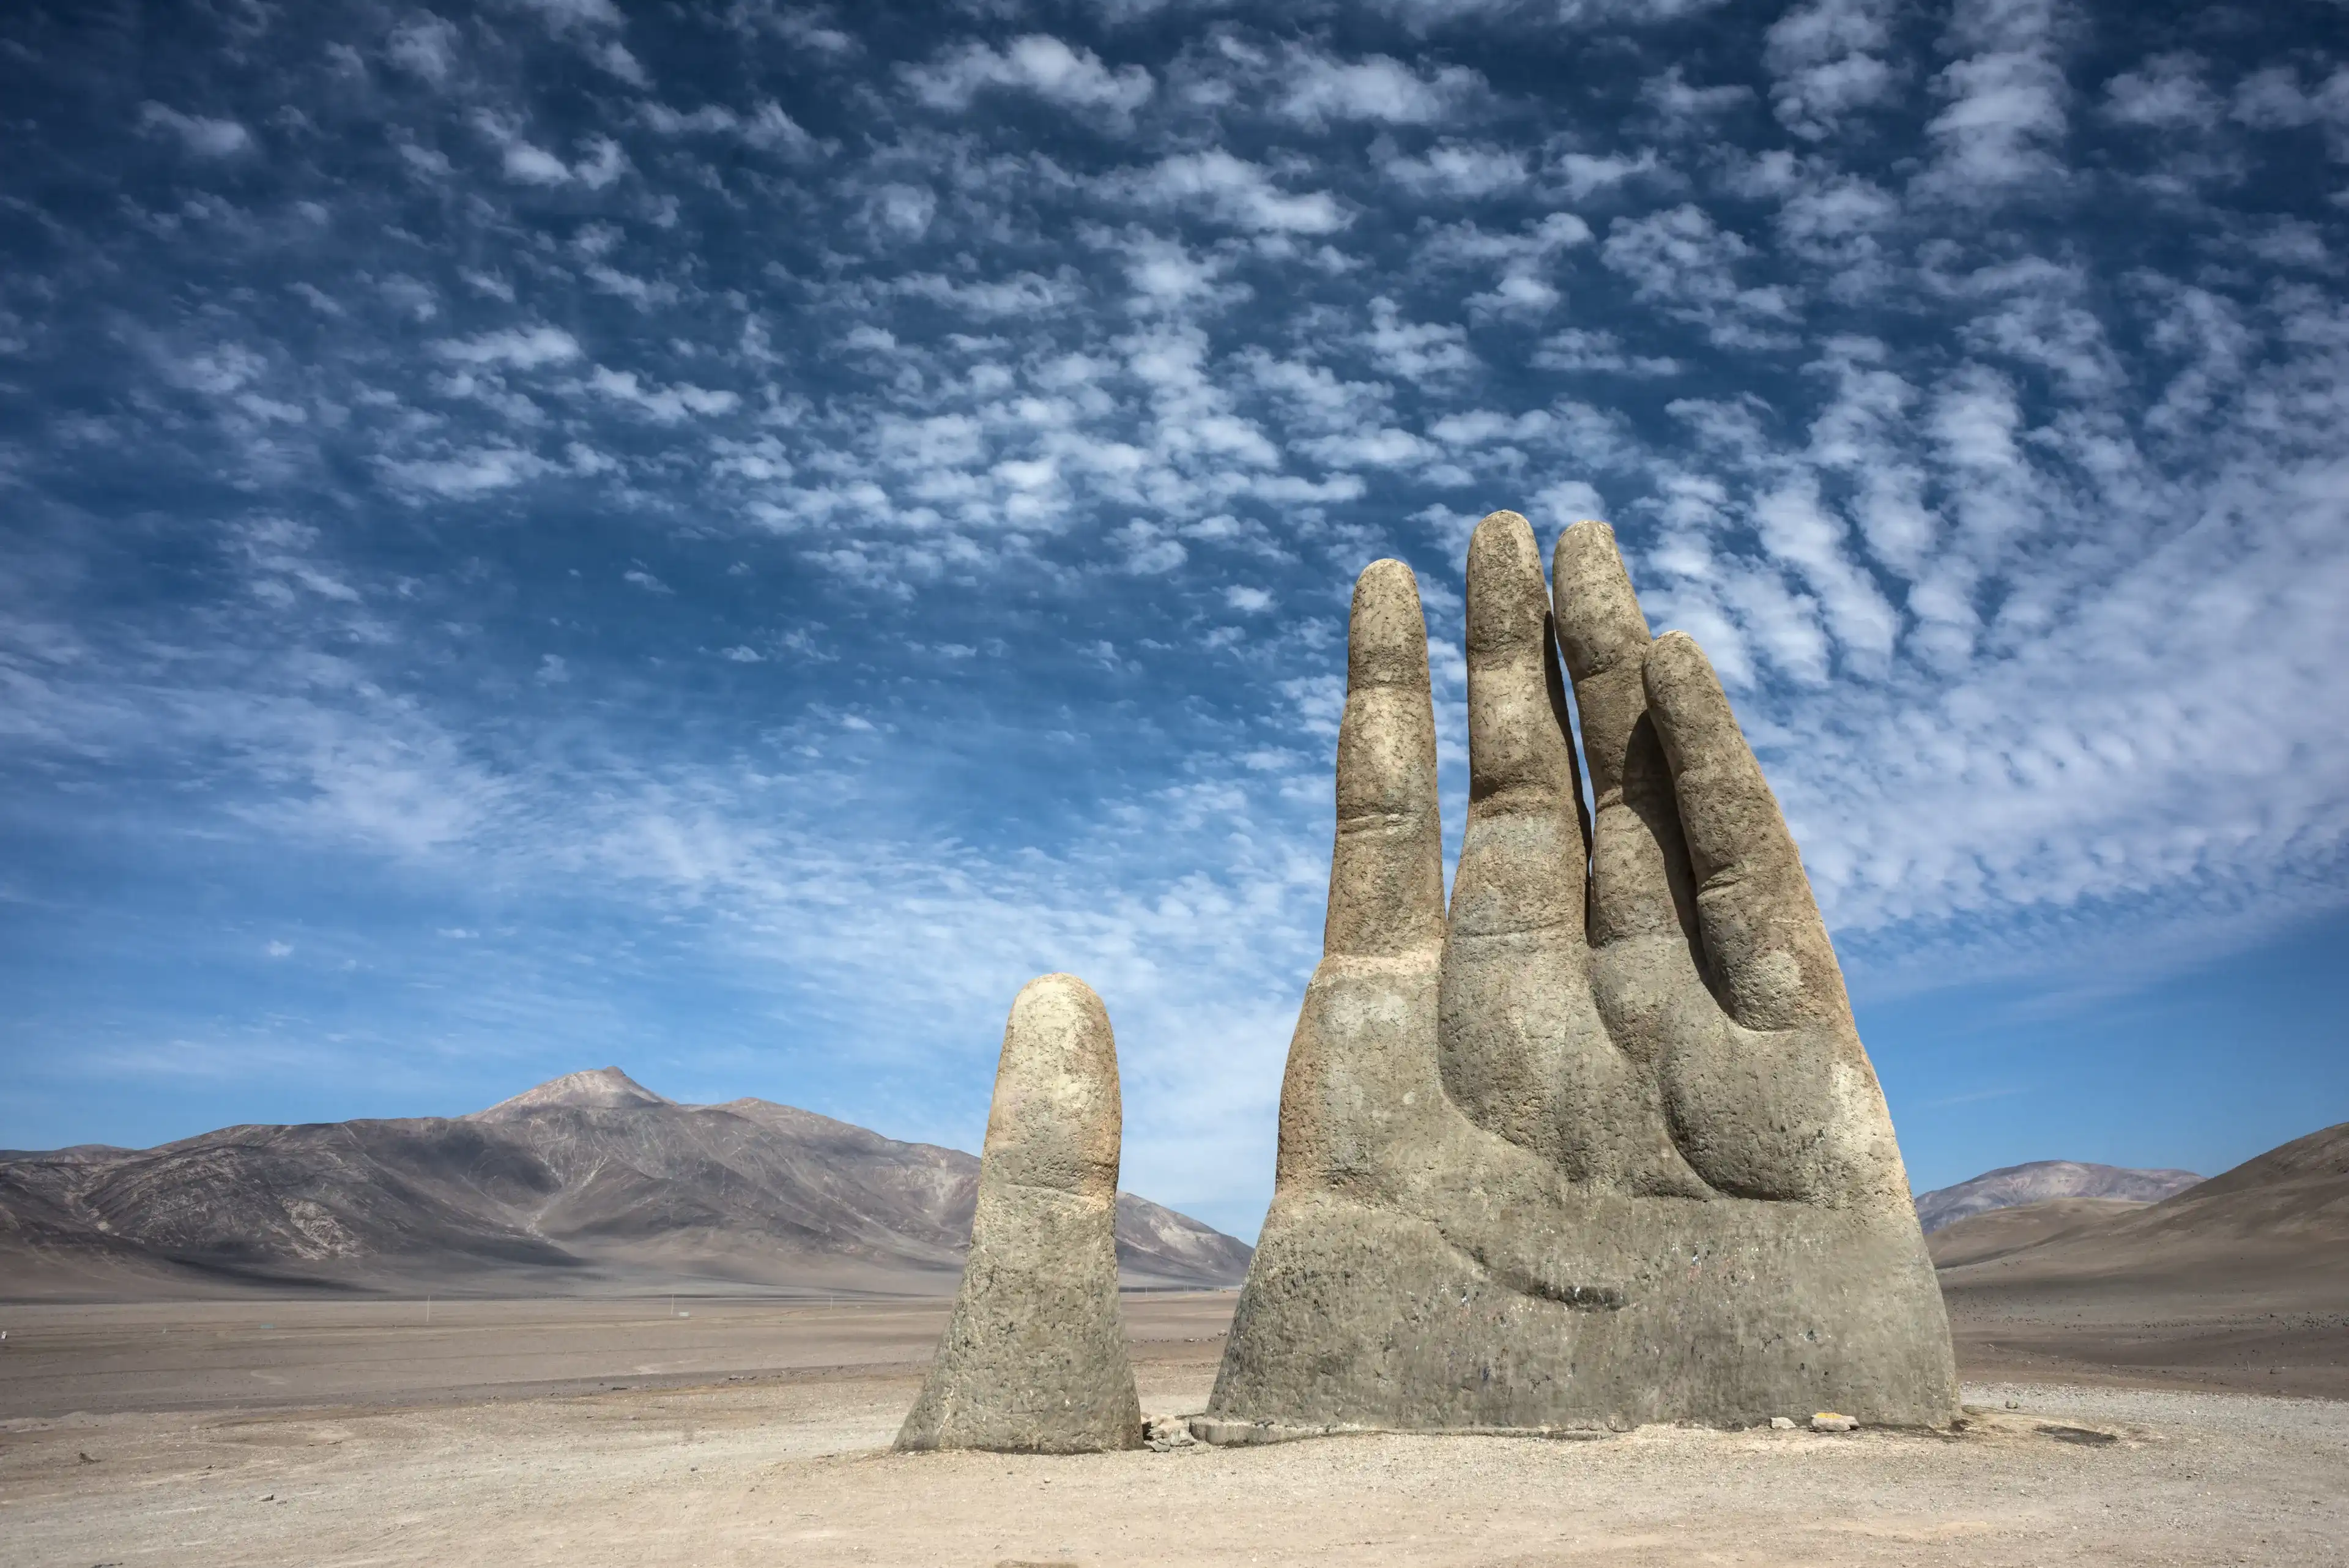 Hand Sculpture, the symbol of Atacama Desert in Chile